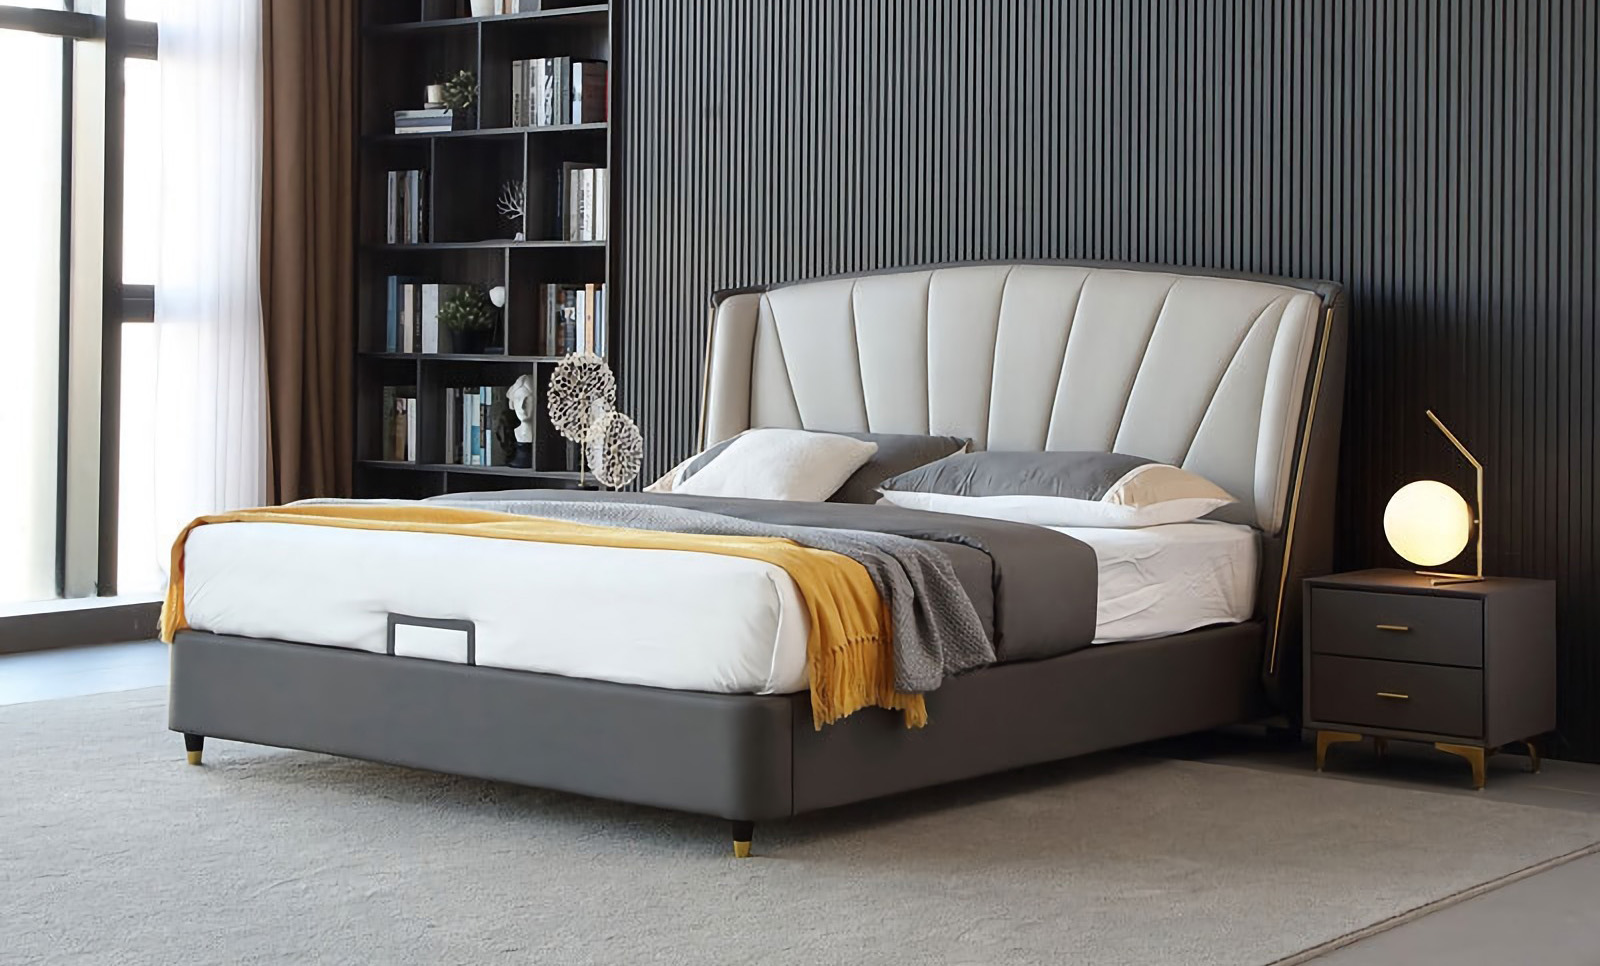 Modern minimalista ágy tervezés A modern minimalista ágy jellemzői.